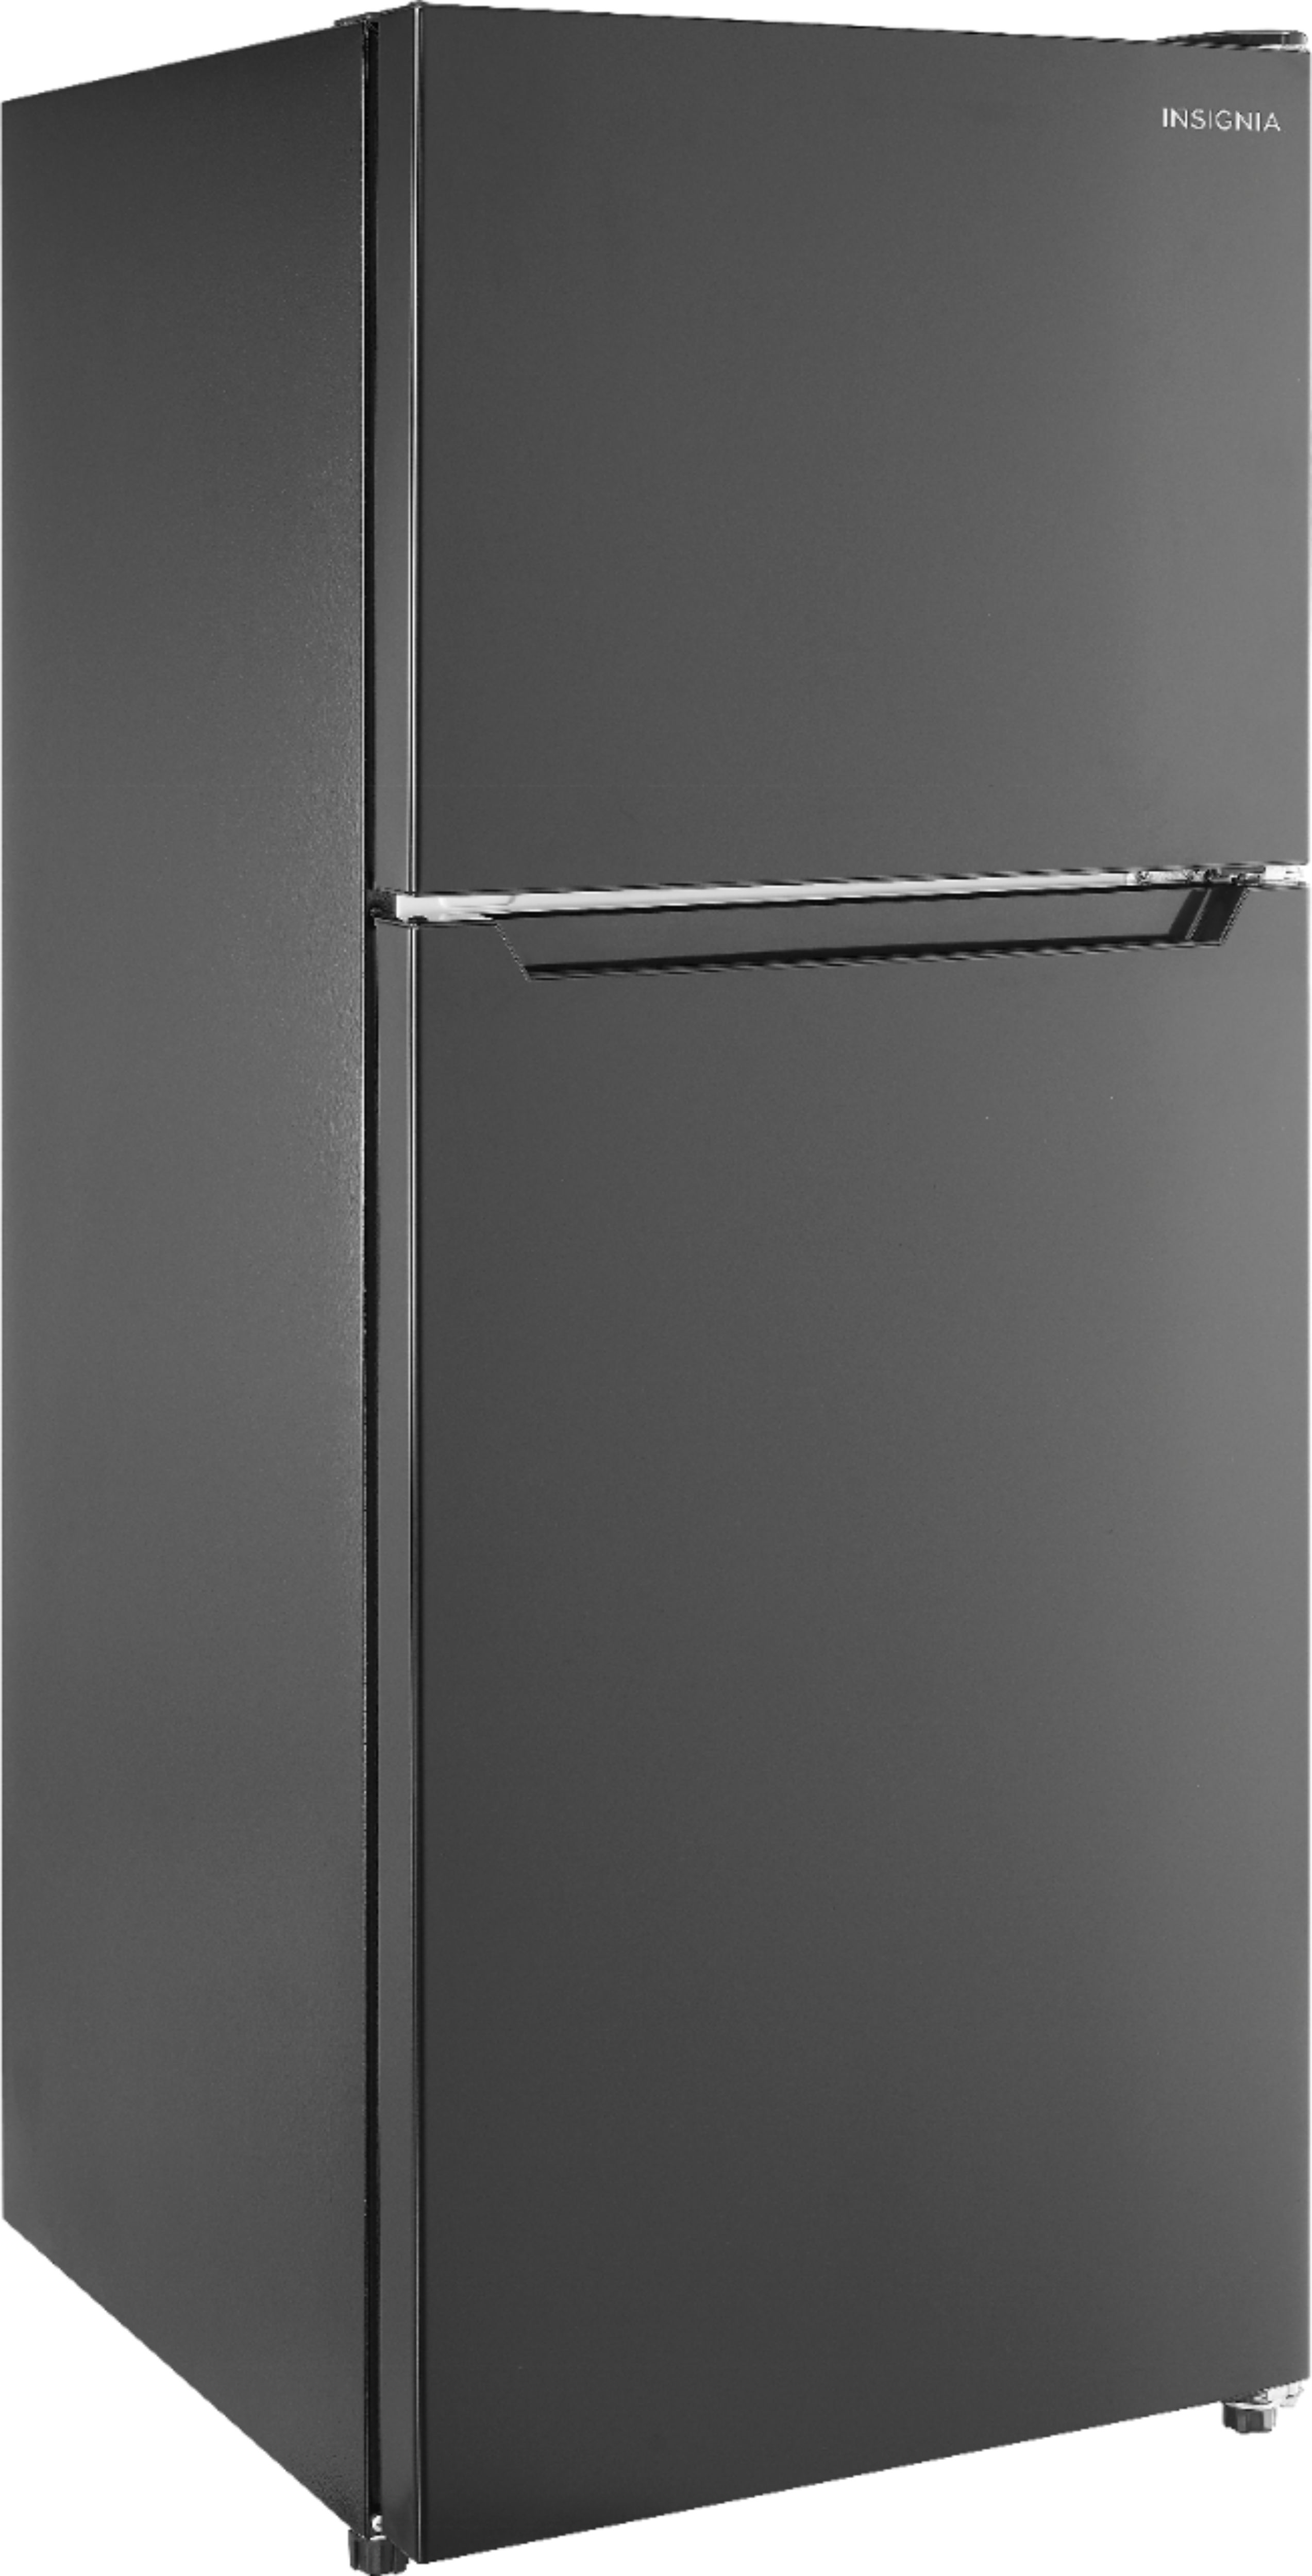 Angle View: Insignia™ - 10.5 Cu. Ft. Top-Freezer Refrigerator - Black